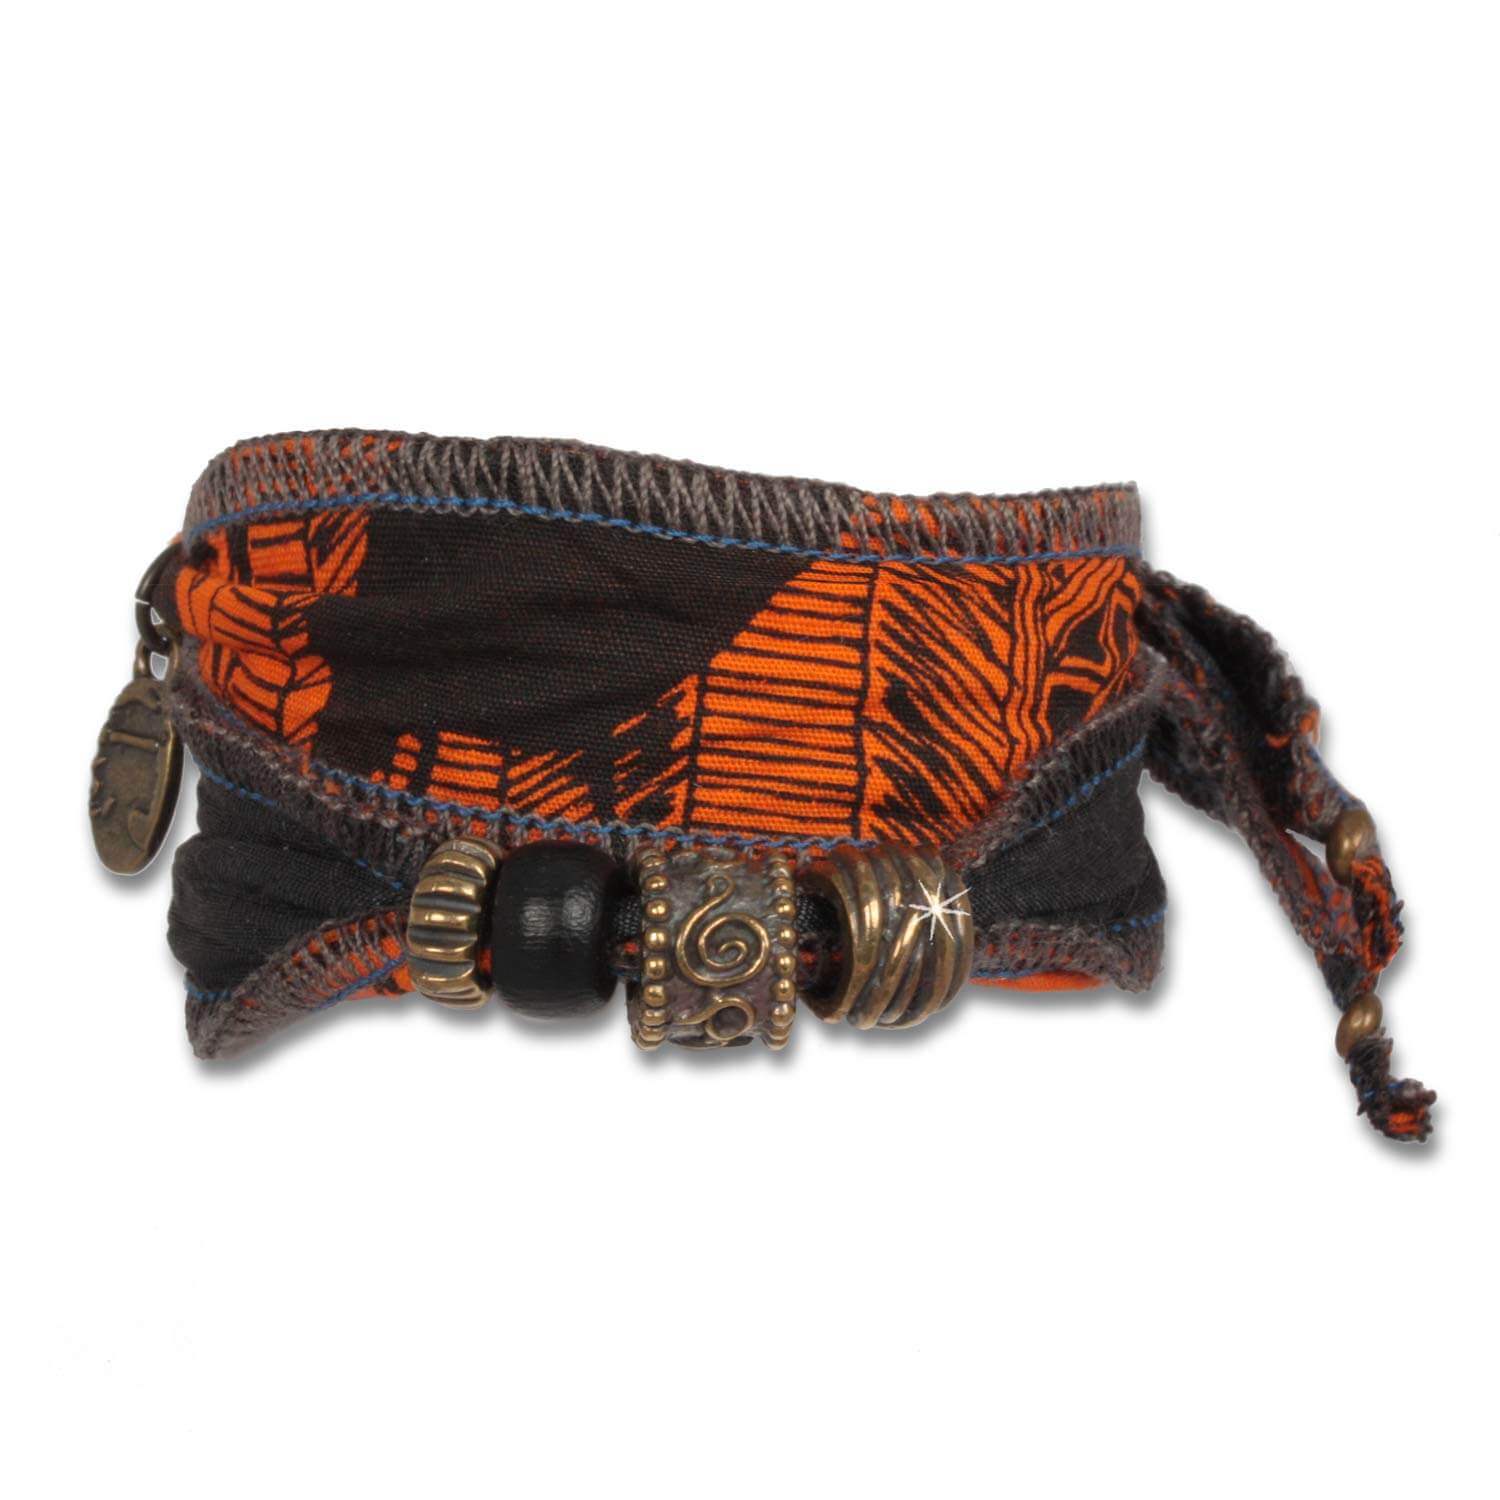 Fire Zulu - Tribal Beads men's bracelet made of african fabrics